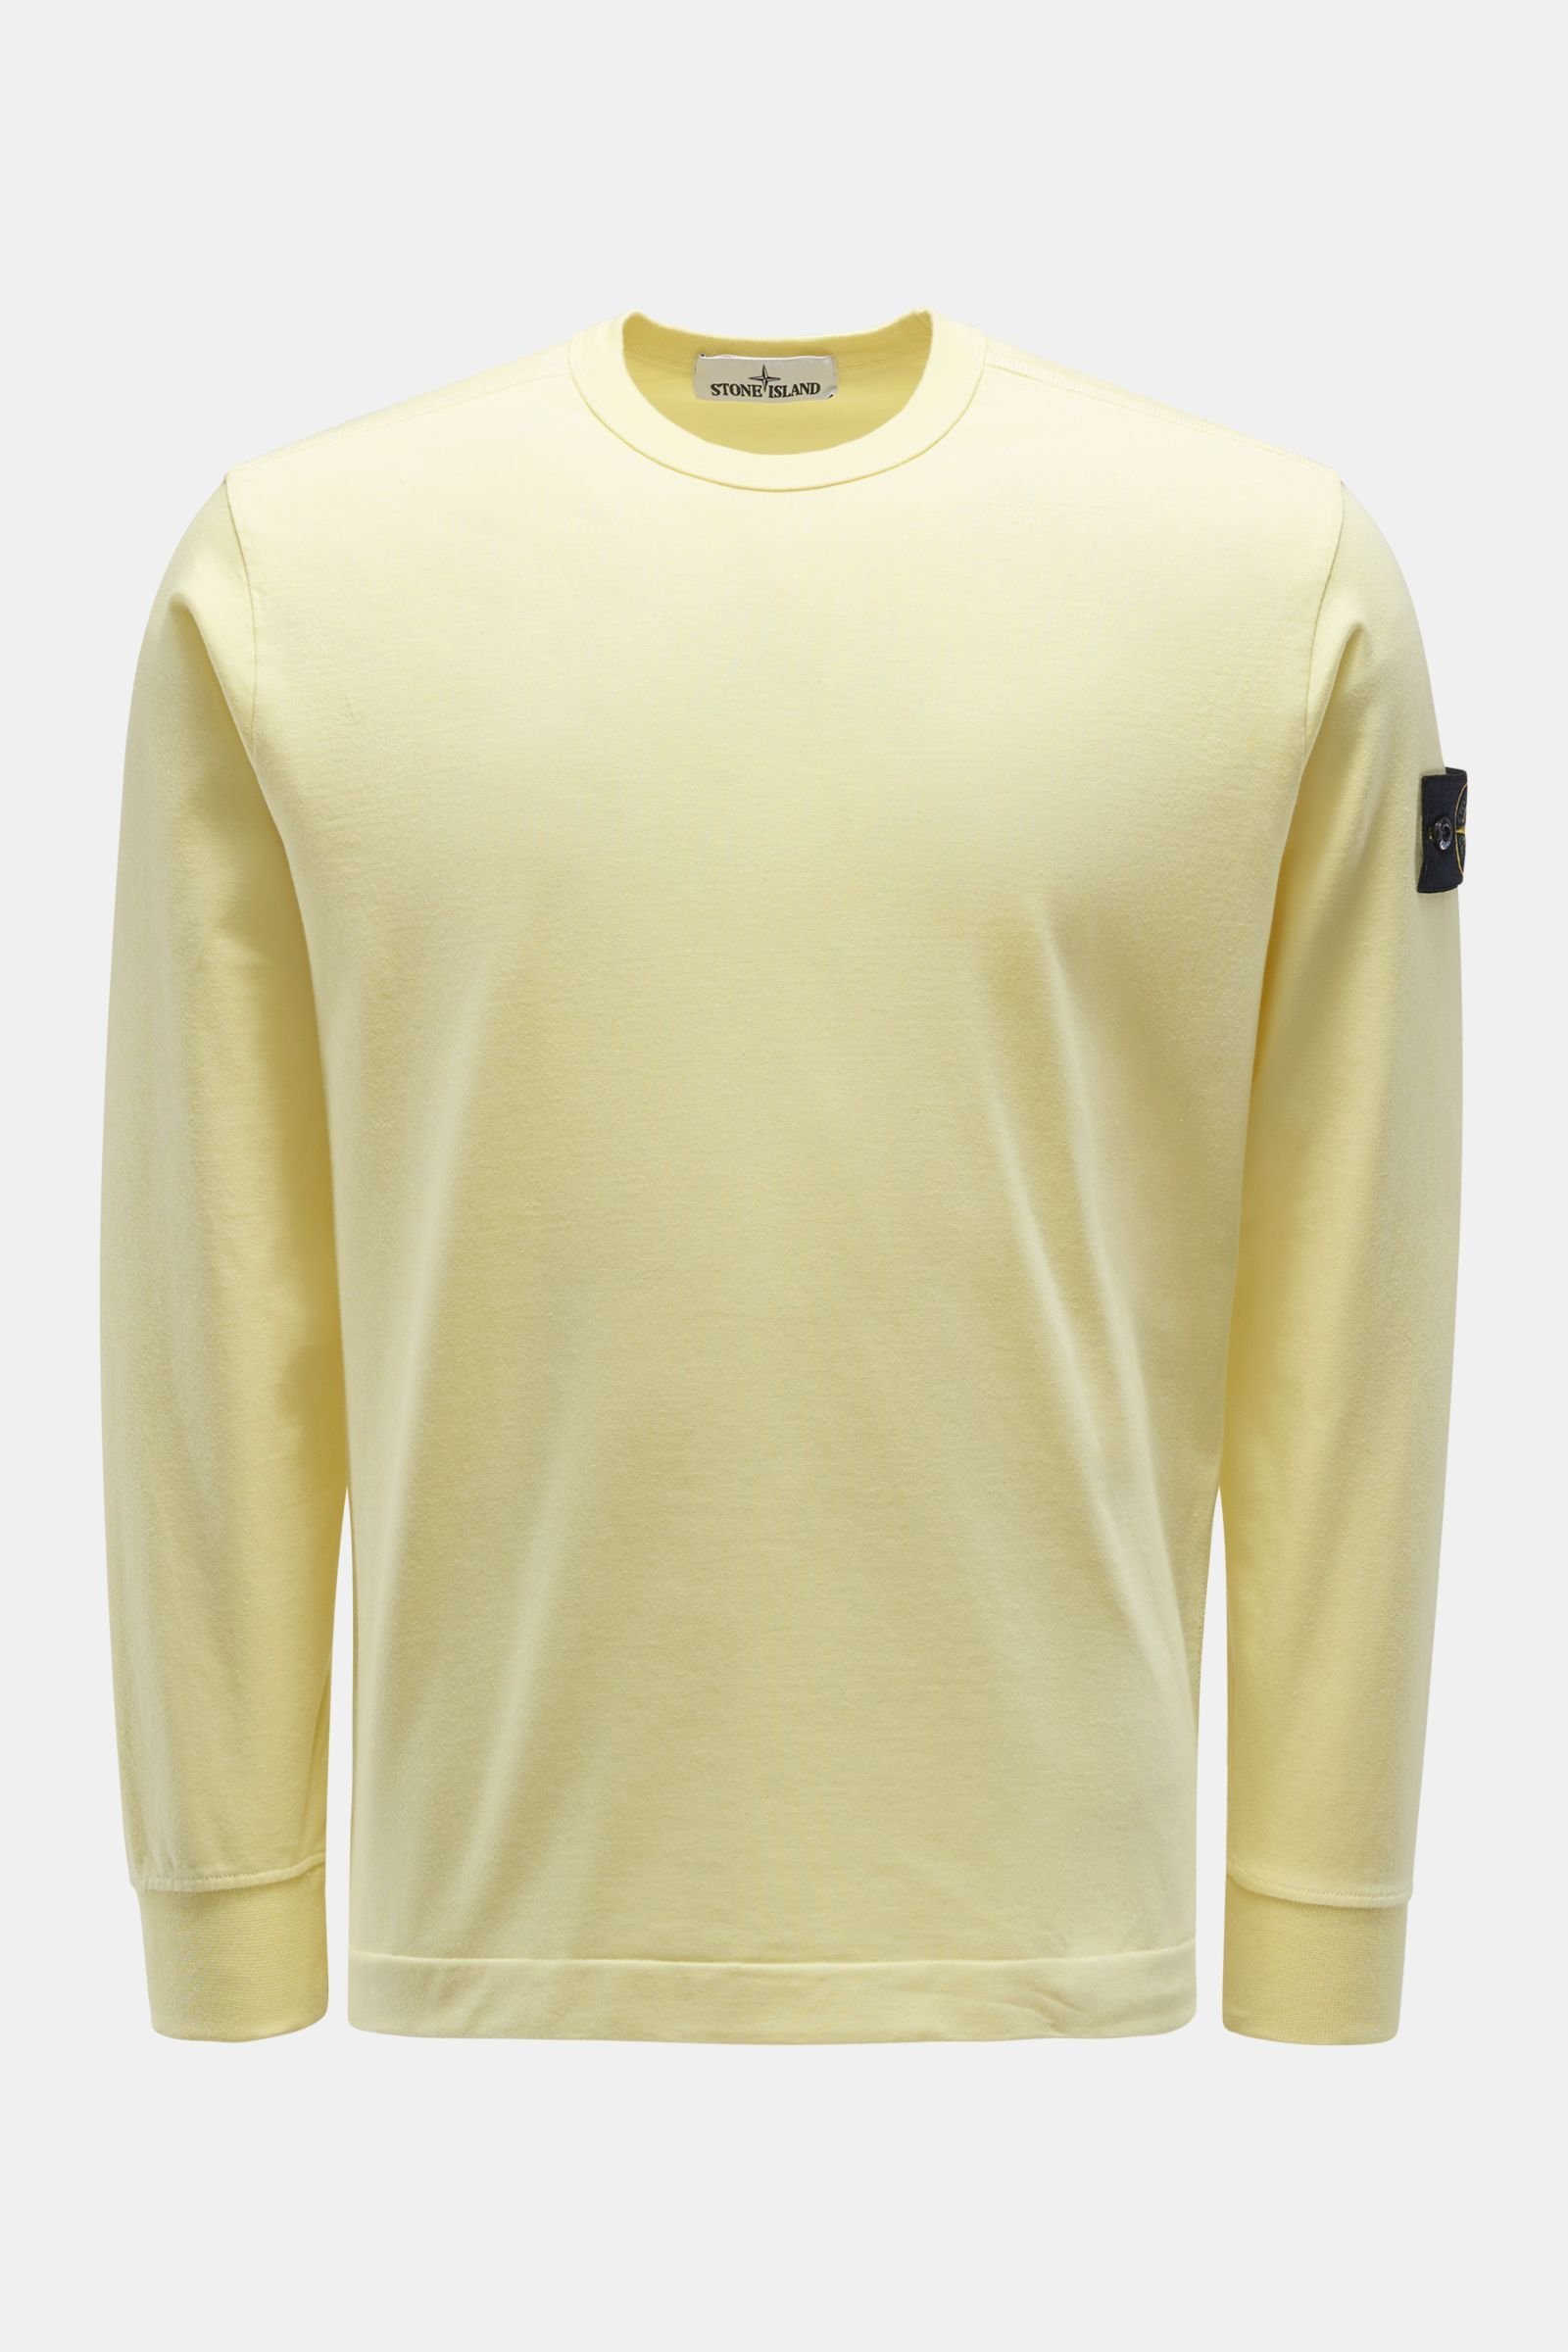 Rundhals-Sweatshirt gelb